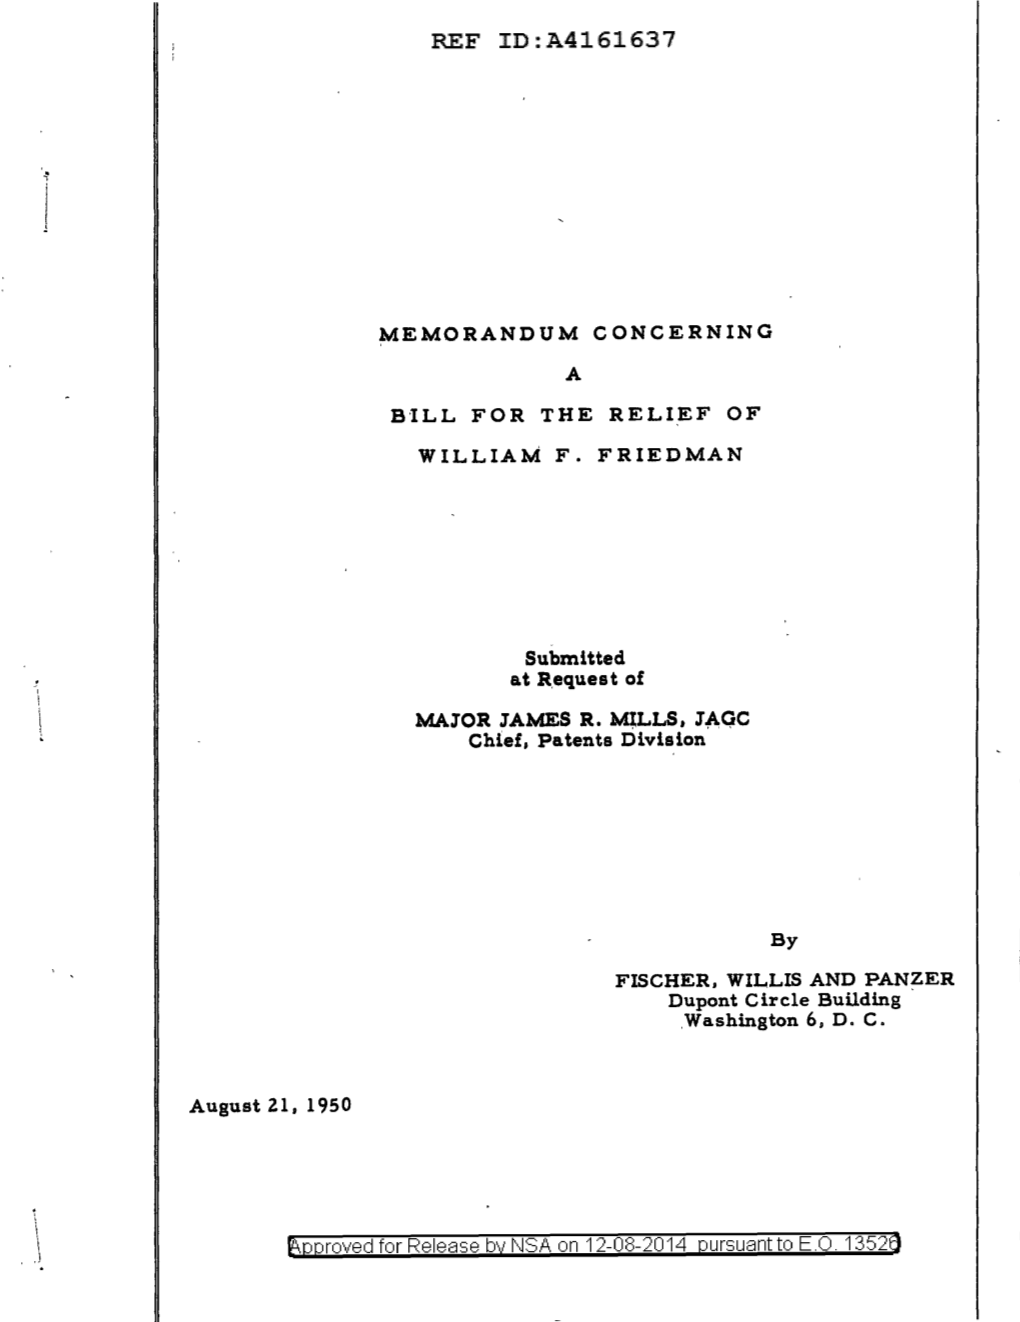 Memorandum Concerning a Bill for the Relief of William F. Friedman